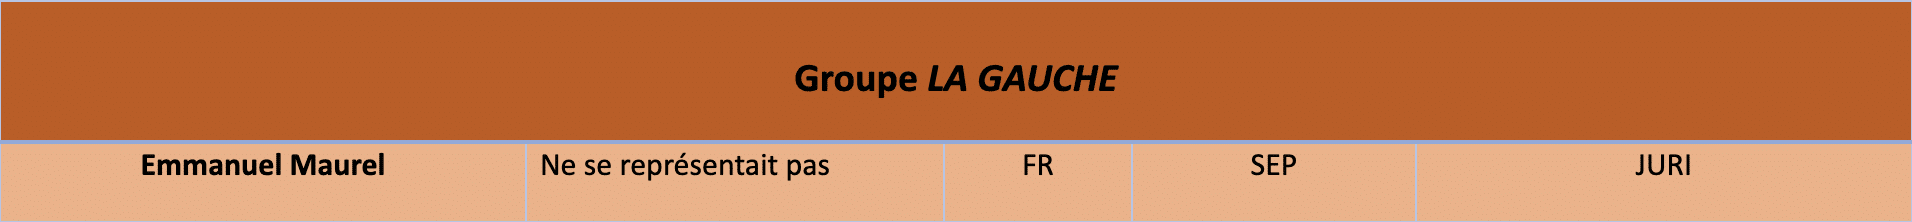 Groupe La Gauche